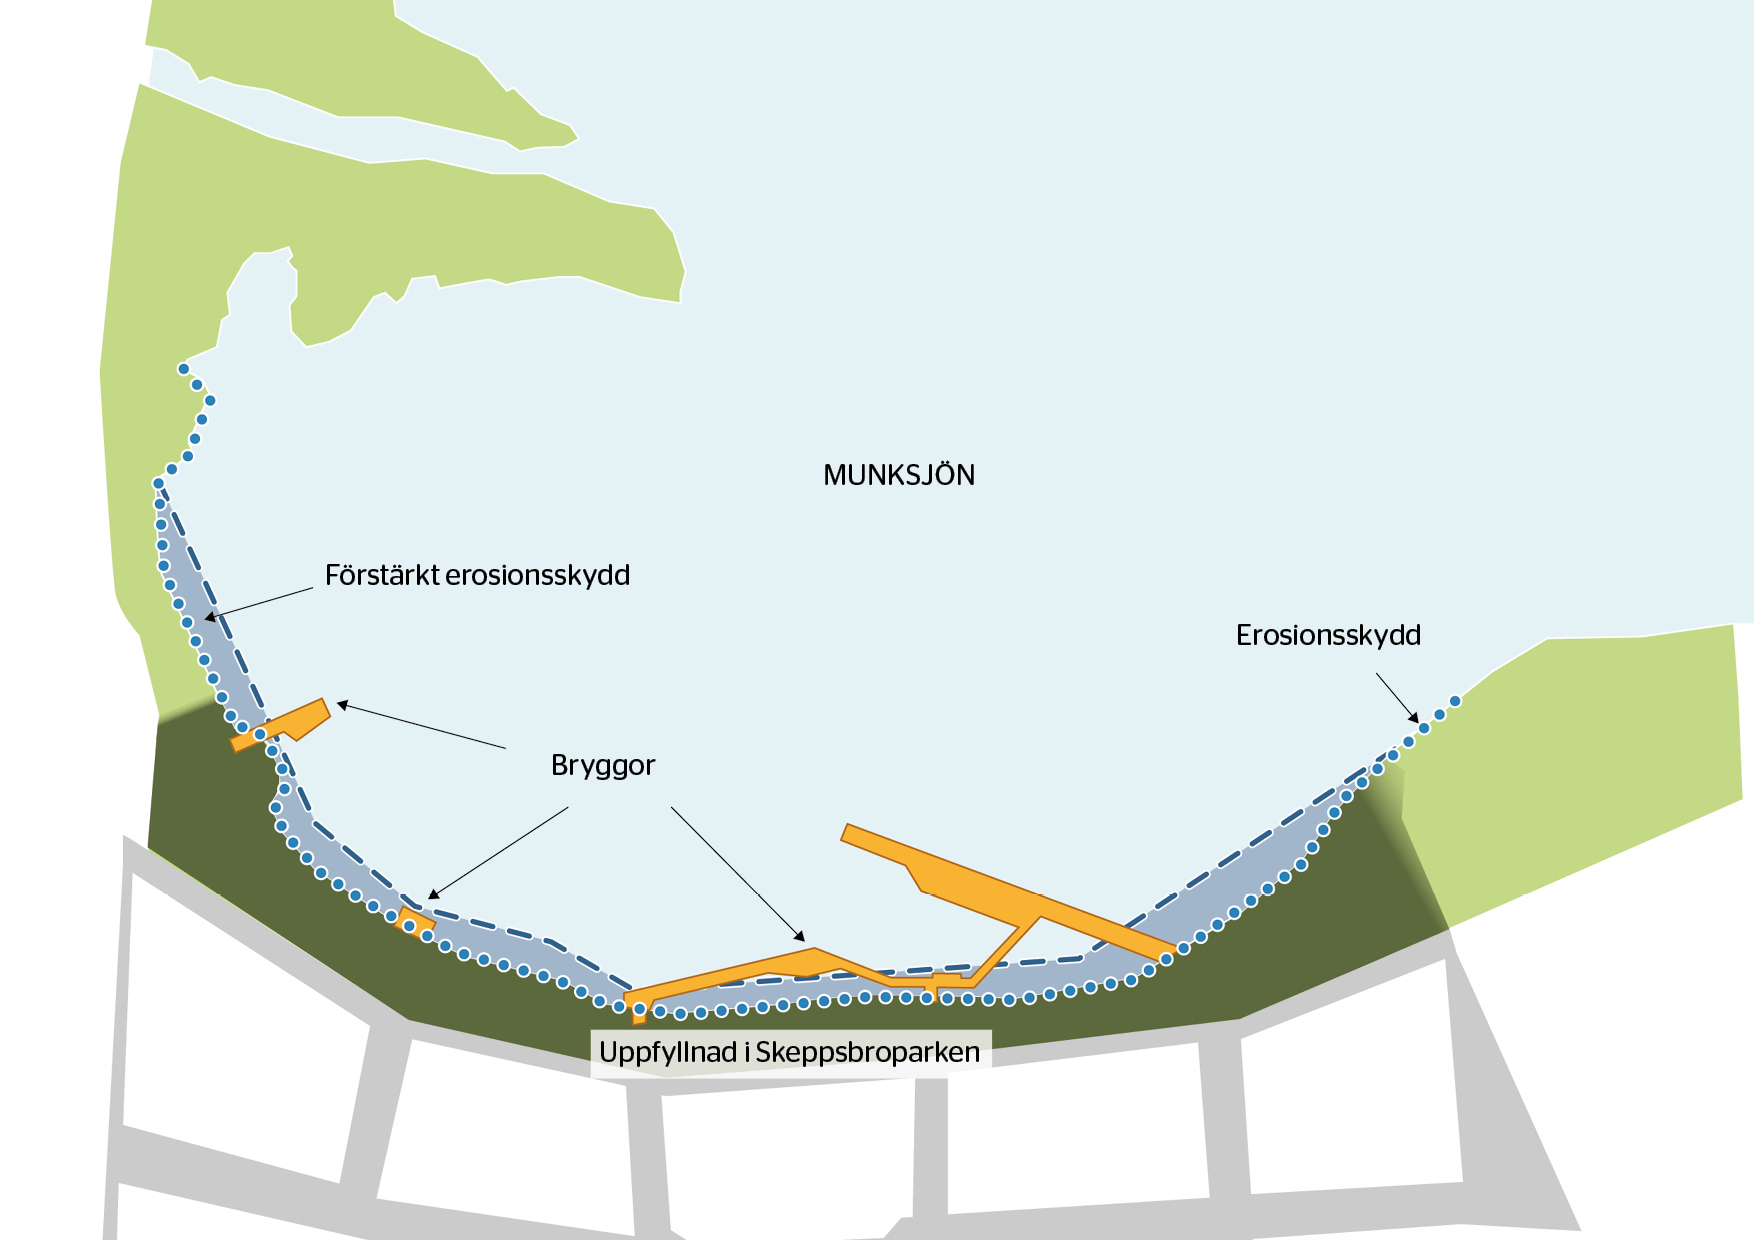 Illustrerad karta som visar de tänkta vattenverksamheterna och deras placering i och intill Skeppsbroparken och Munksjön. Klicka på kartan för att ladda ner en tillgänglighetsanpassad PDF.